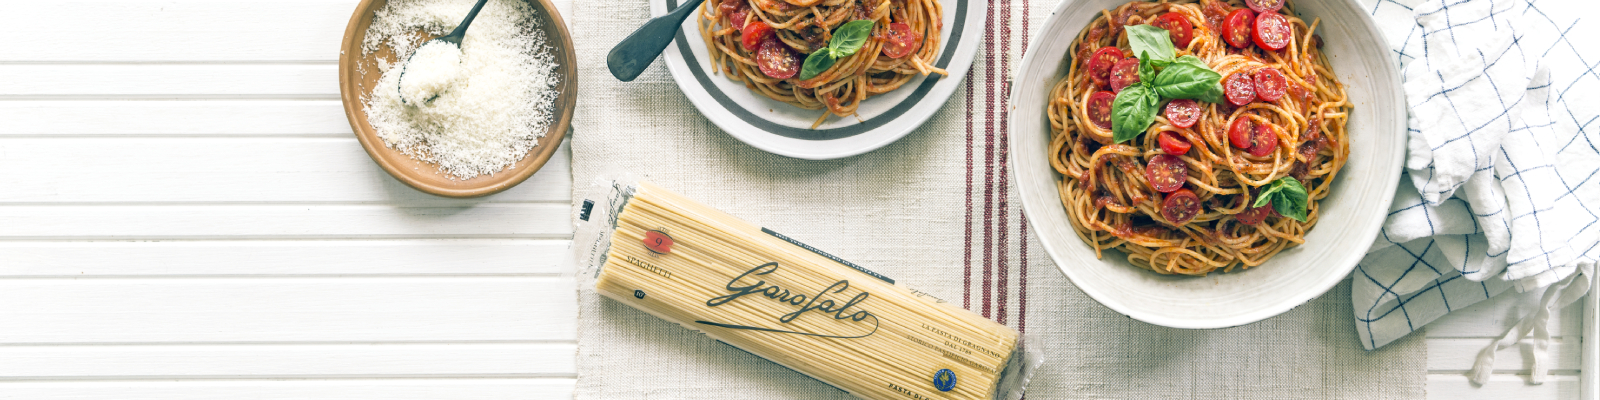 Pasta Garofalo - Spaghetti met verse tomatensaus en basilicum